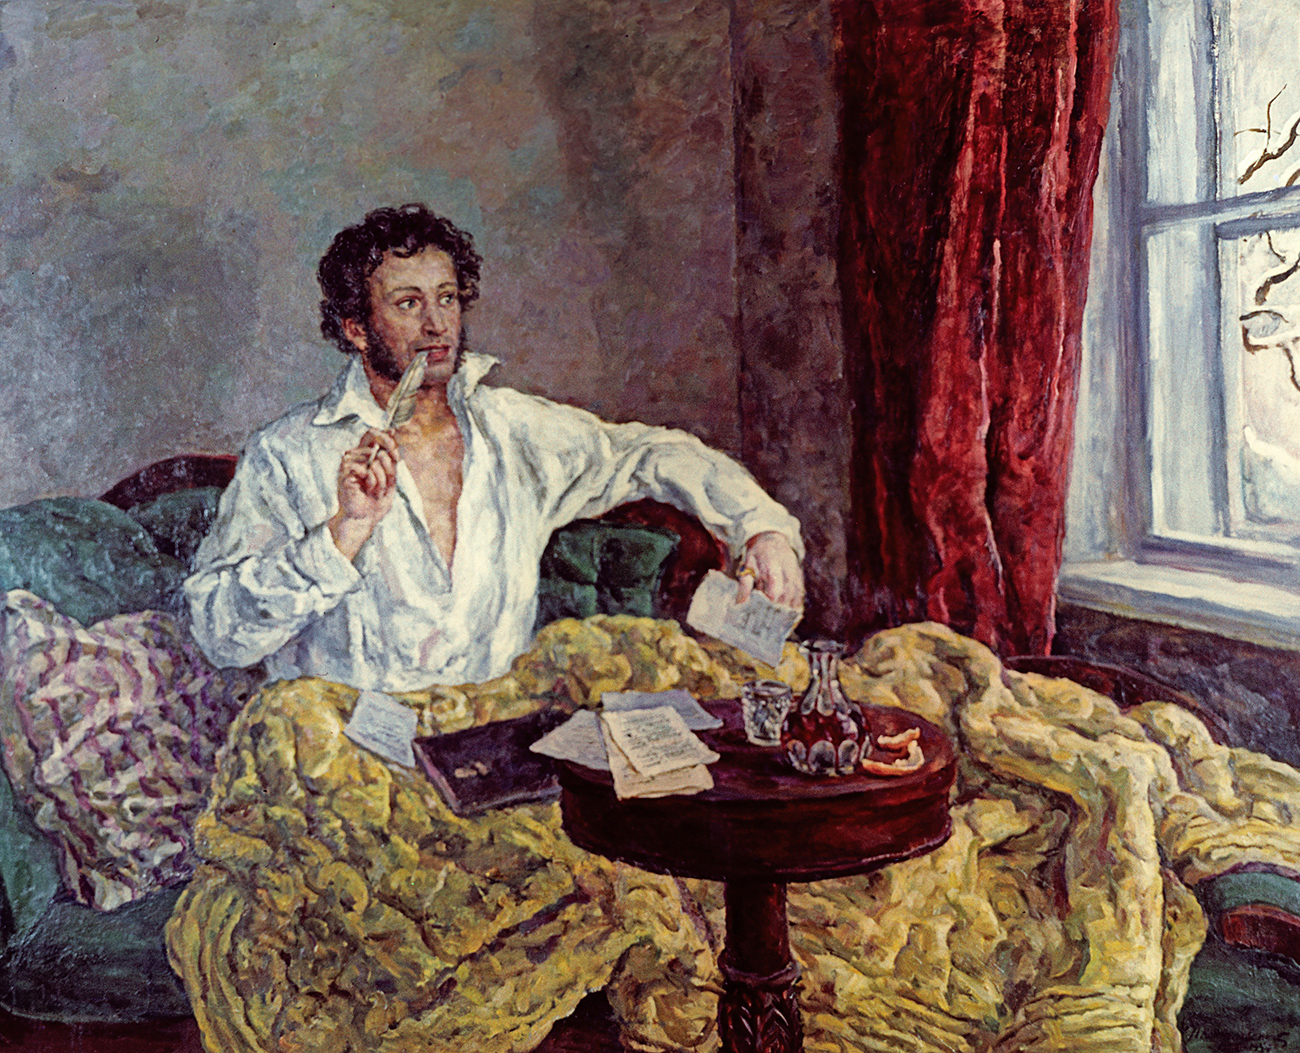 Retrato de Alexander Pushkin realizado por Piotr Konchalovski (1932).